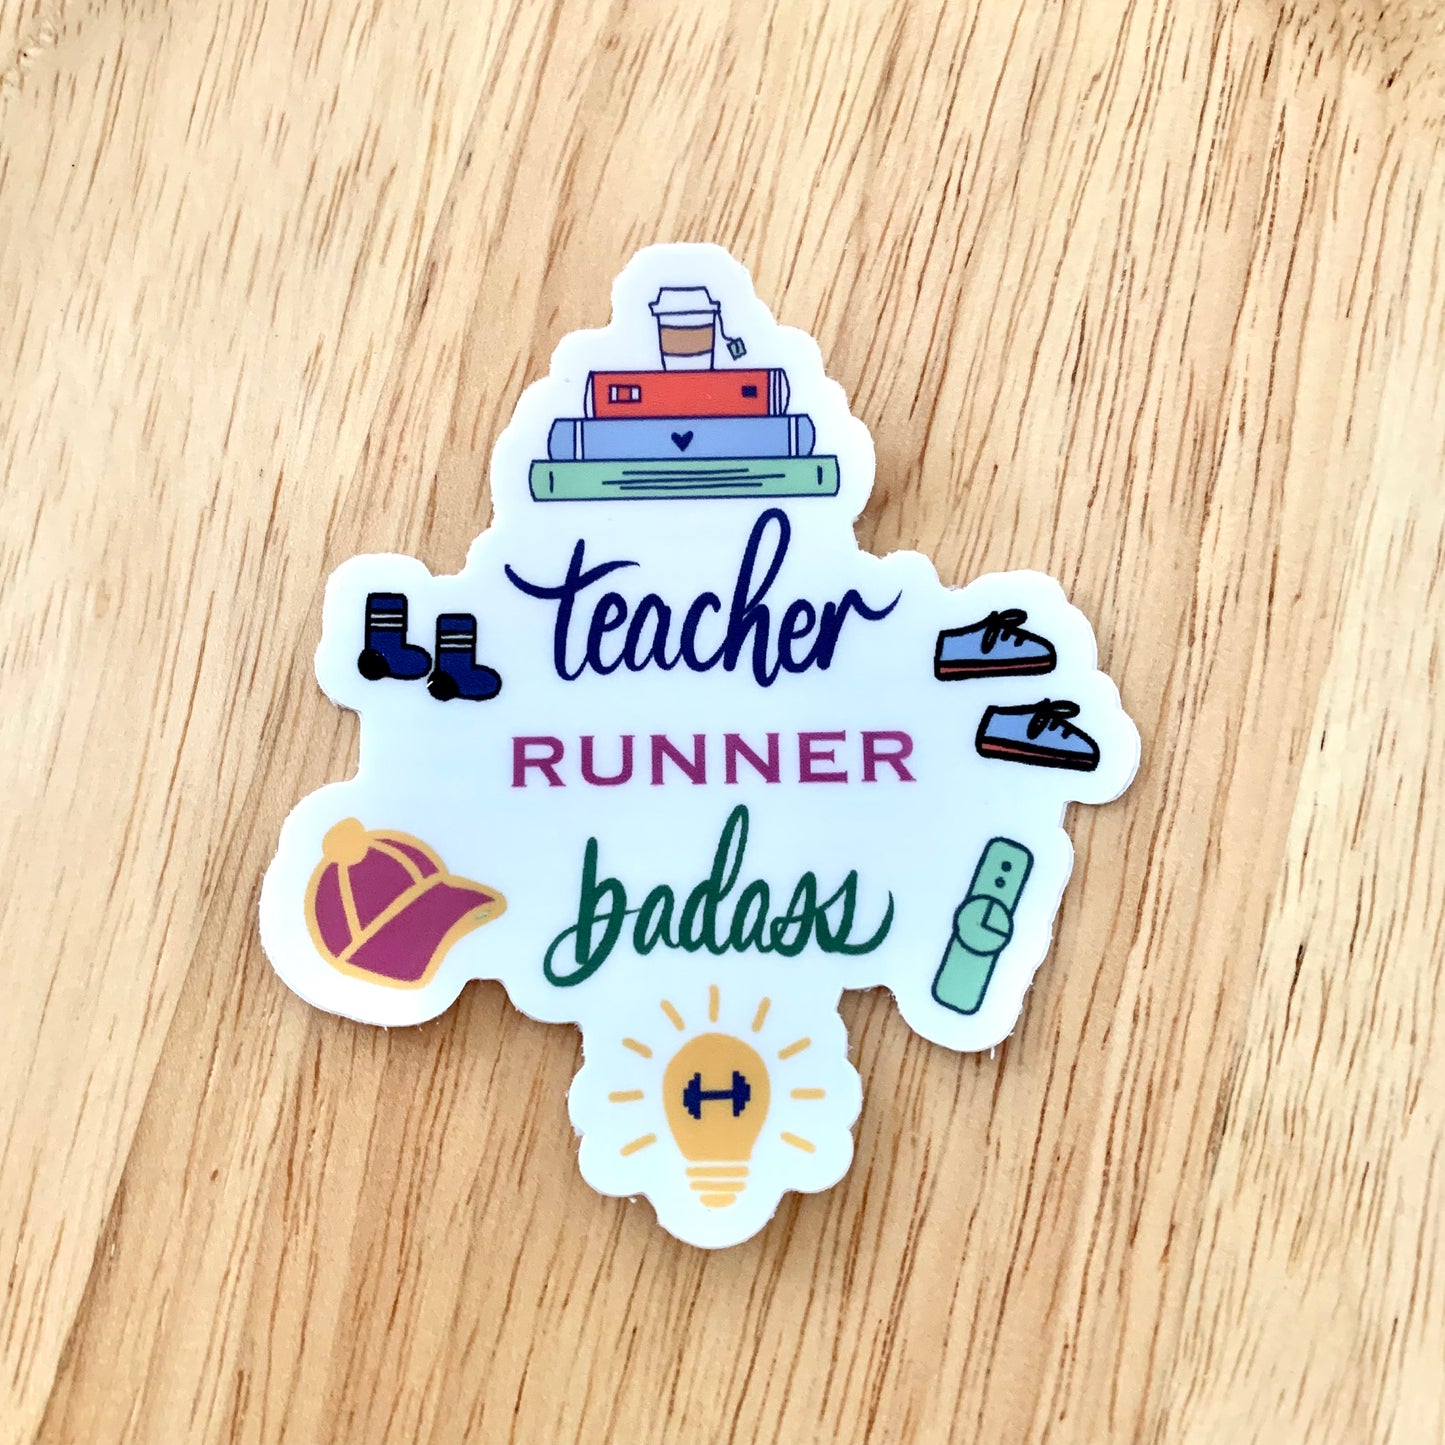 Teacher runner sticker, I am a teacher and runner sticker